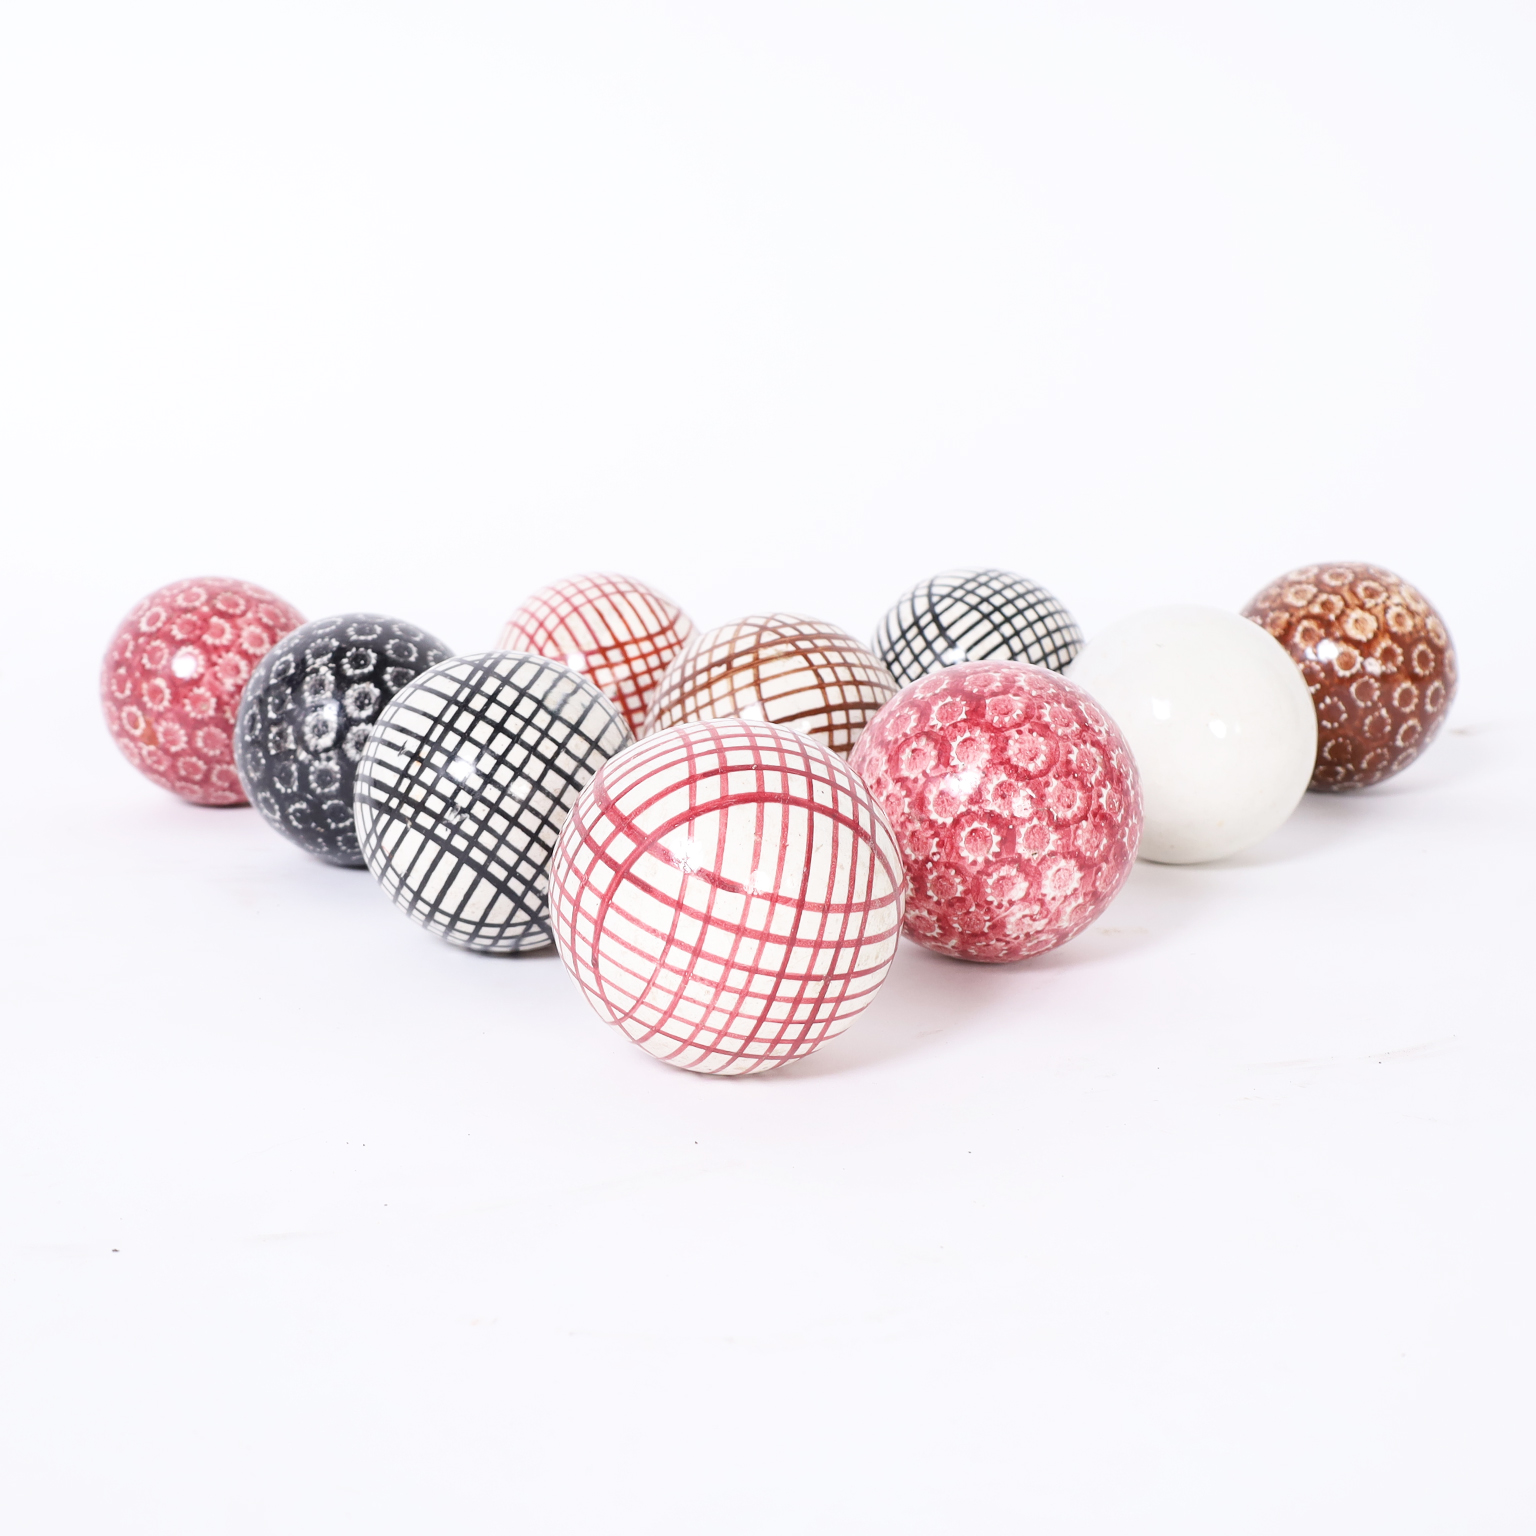 Collection of Ten Antique Carpet Balls